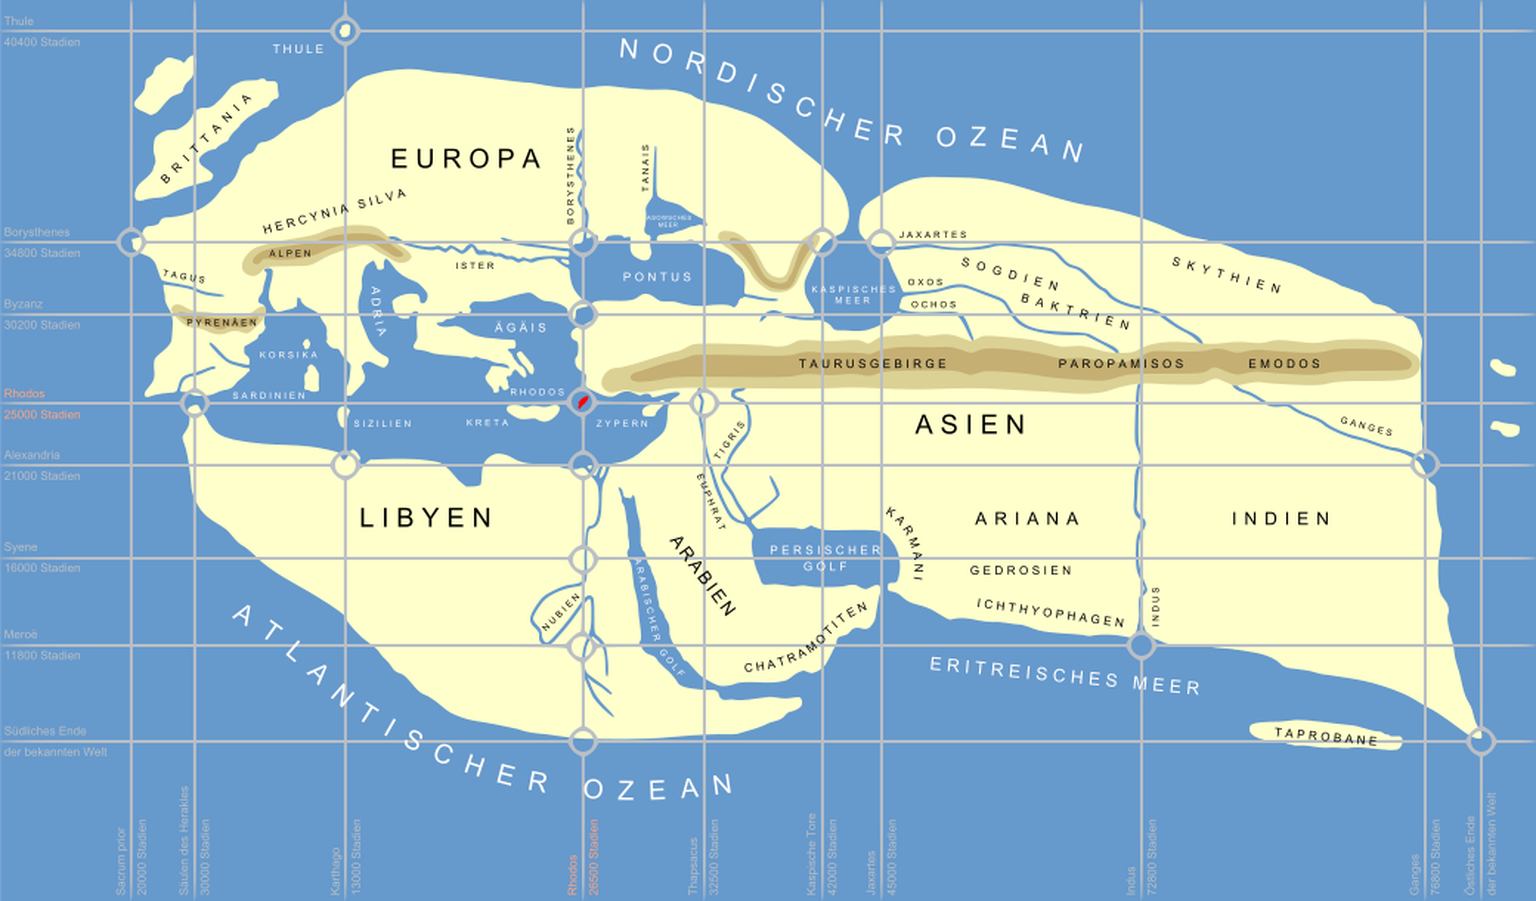 Rekonstruktion der Weltkarte von Eratosthenes
https://de.m.wikipedia.org/wiki/Datei:Eratosthenes_world_map_%28German_text%29_SVG.svg